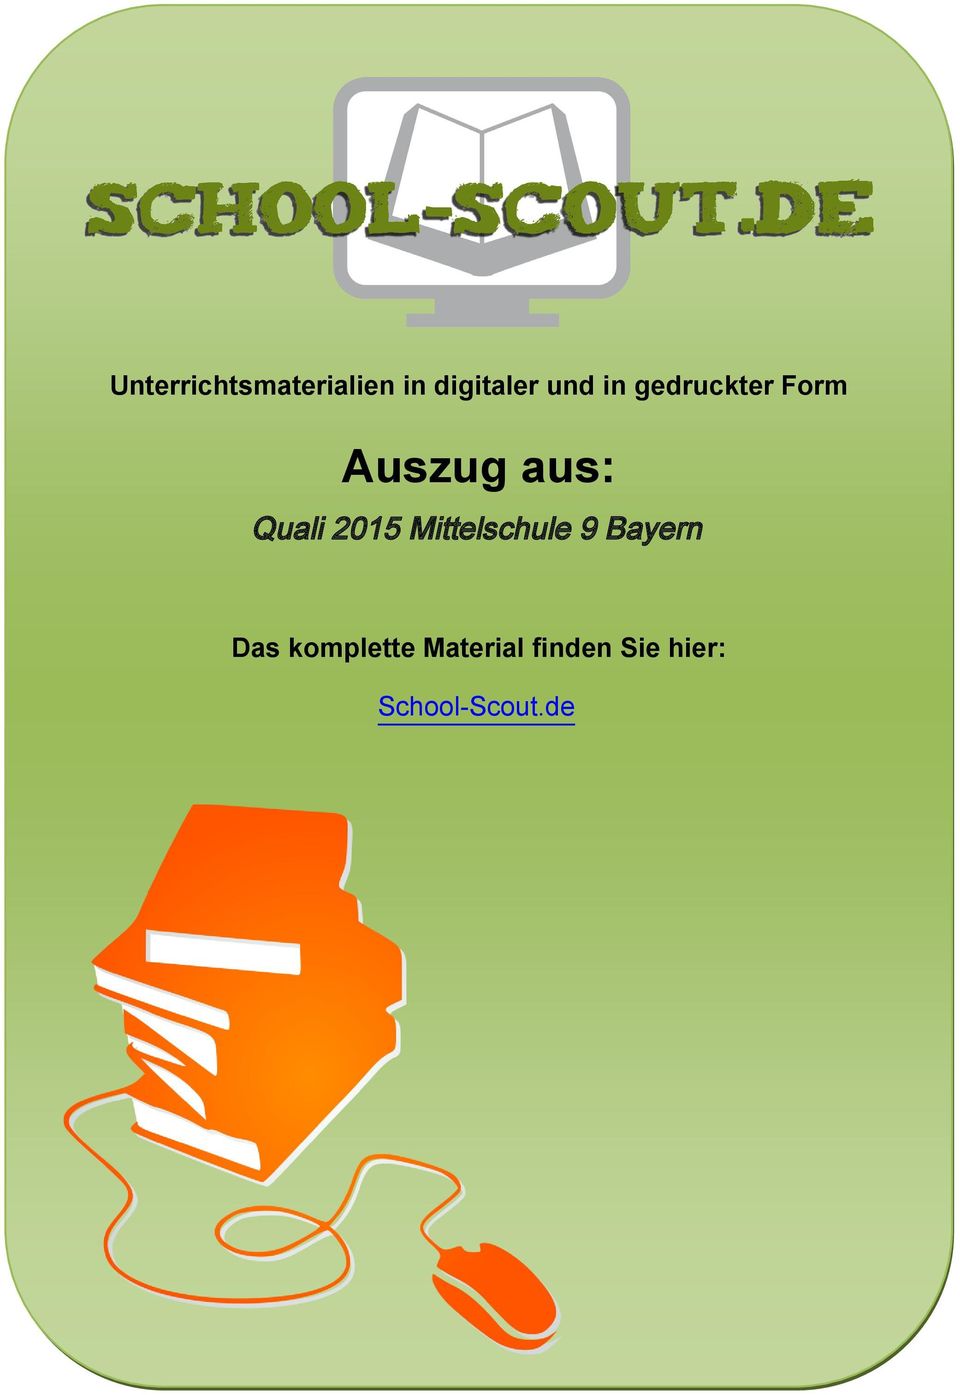 2015 Mittelschule 9 Bayern Das